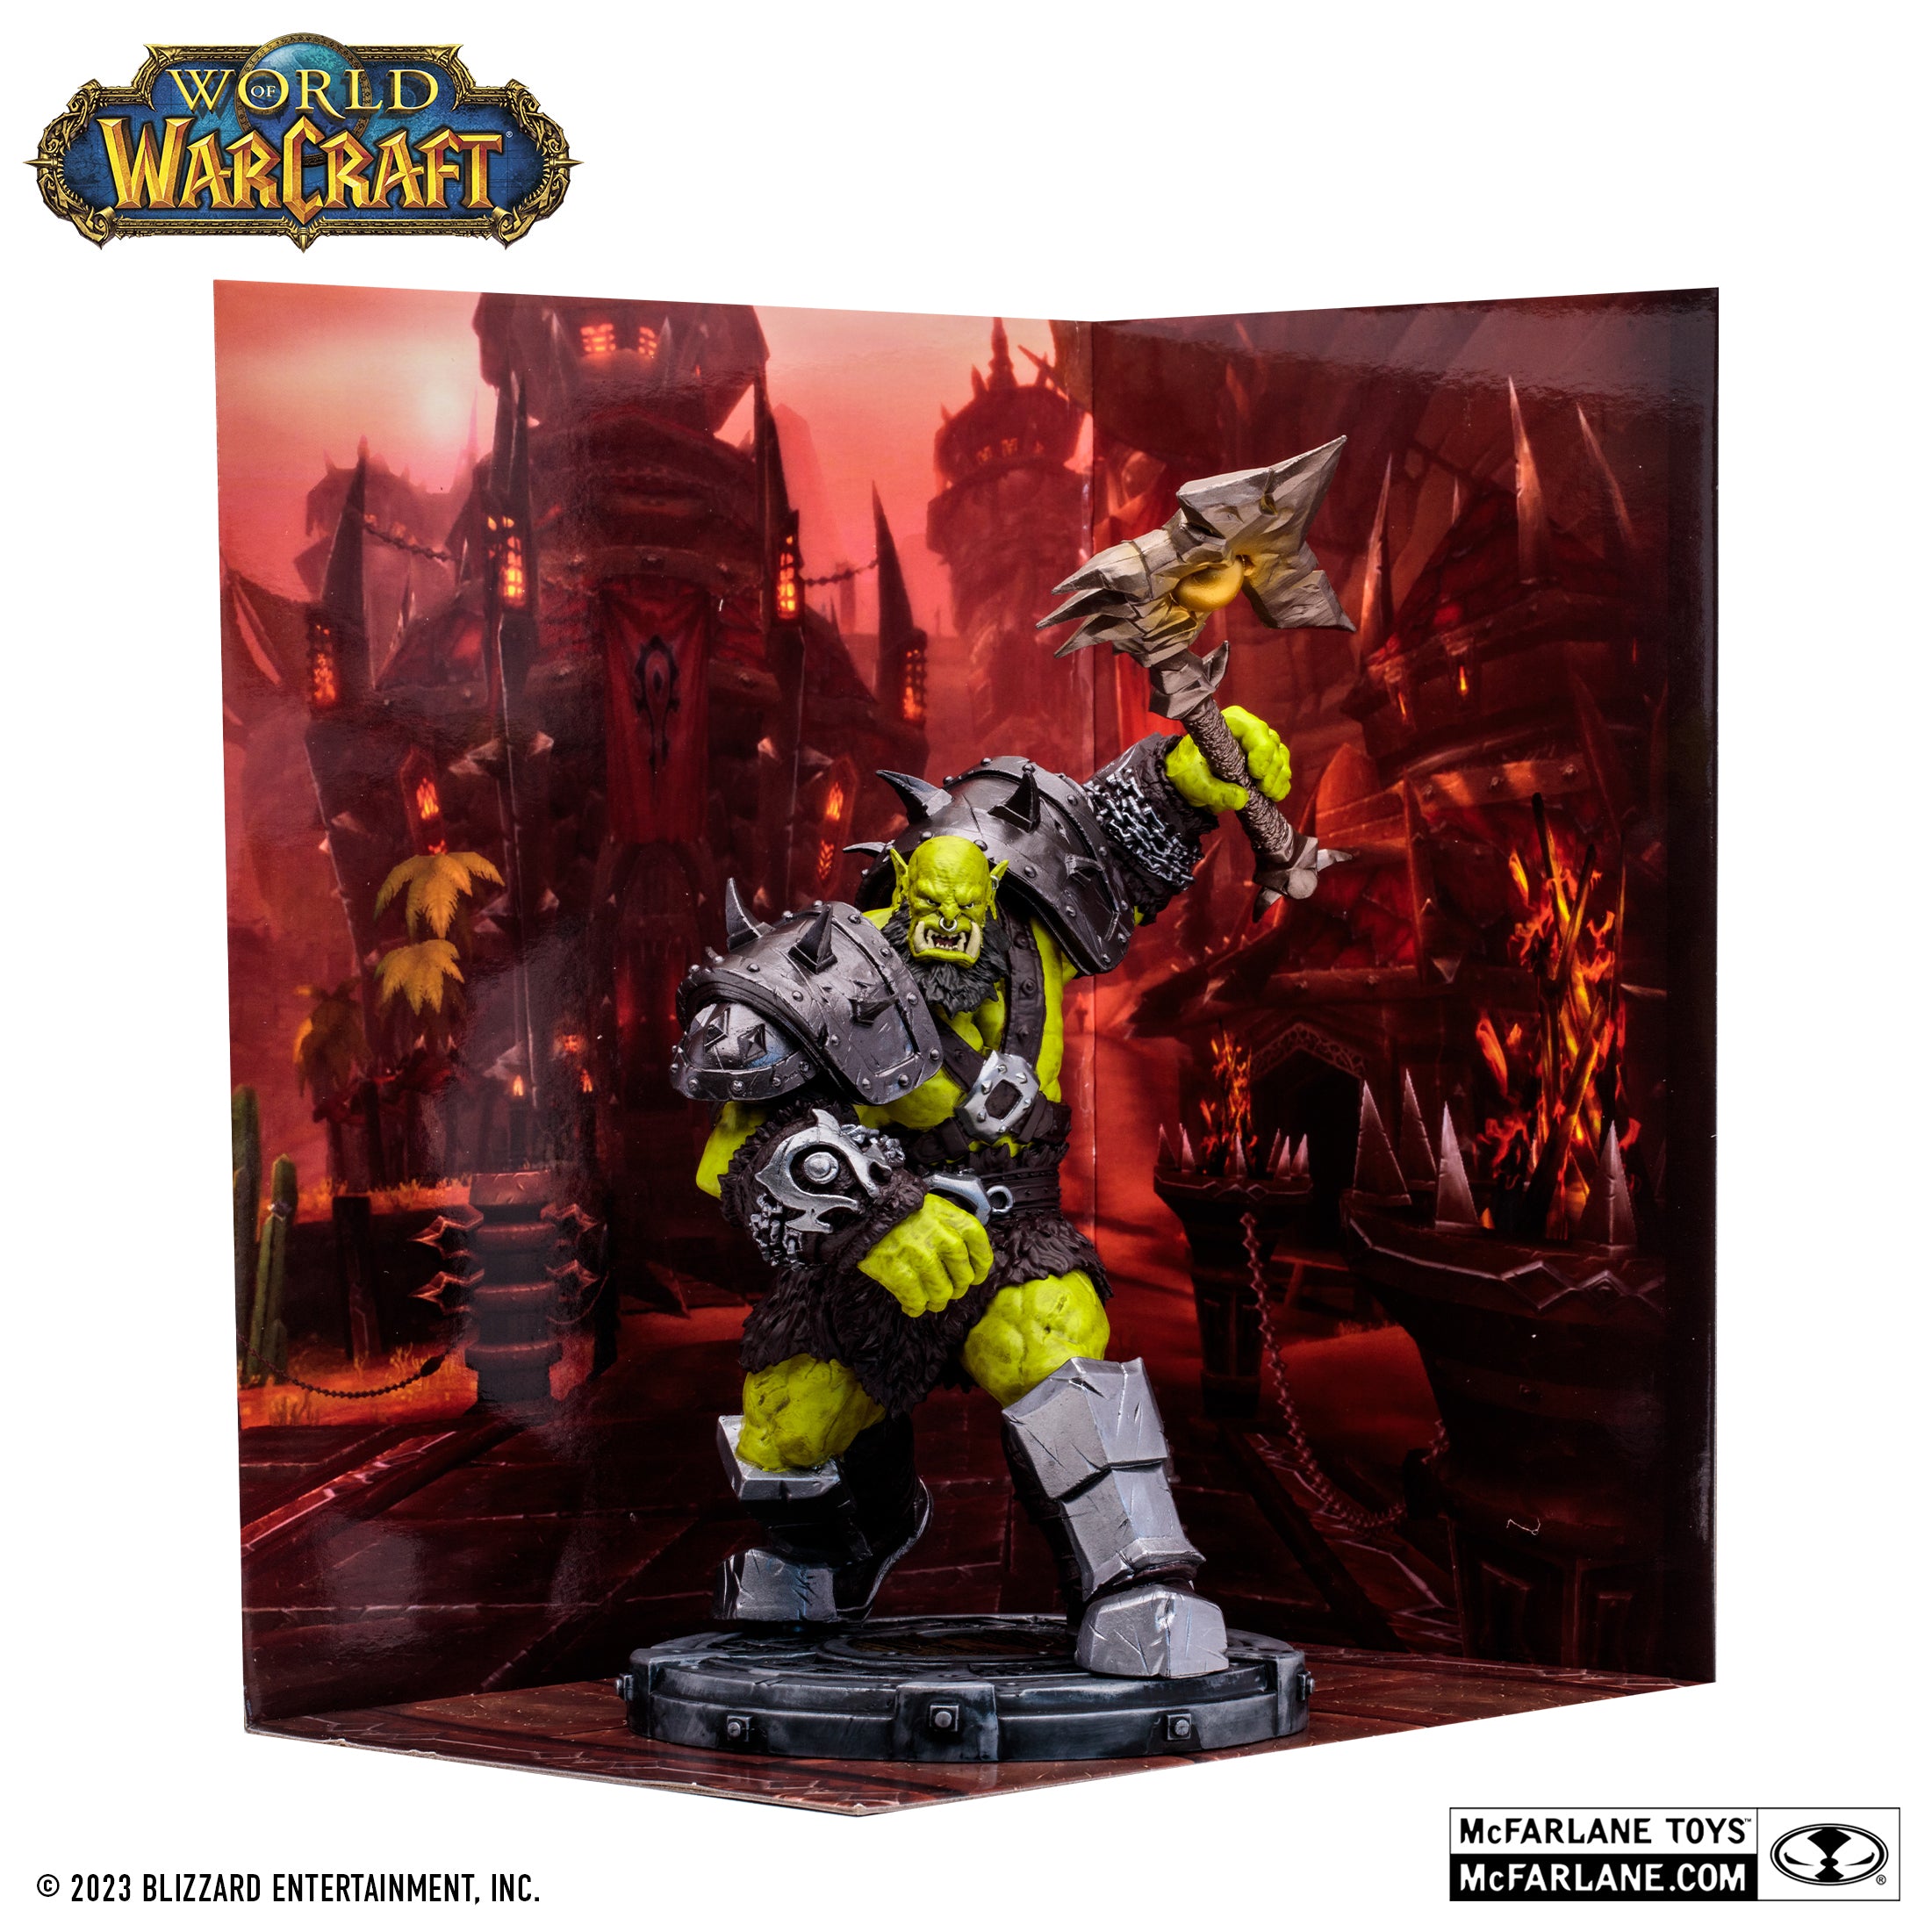 McFarlane Estatua: World Of Warcraft - Orco Shaman Guerrero Rare Escala 1/12